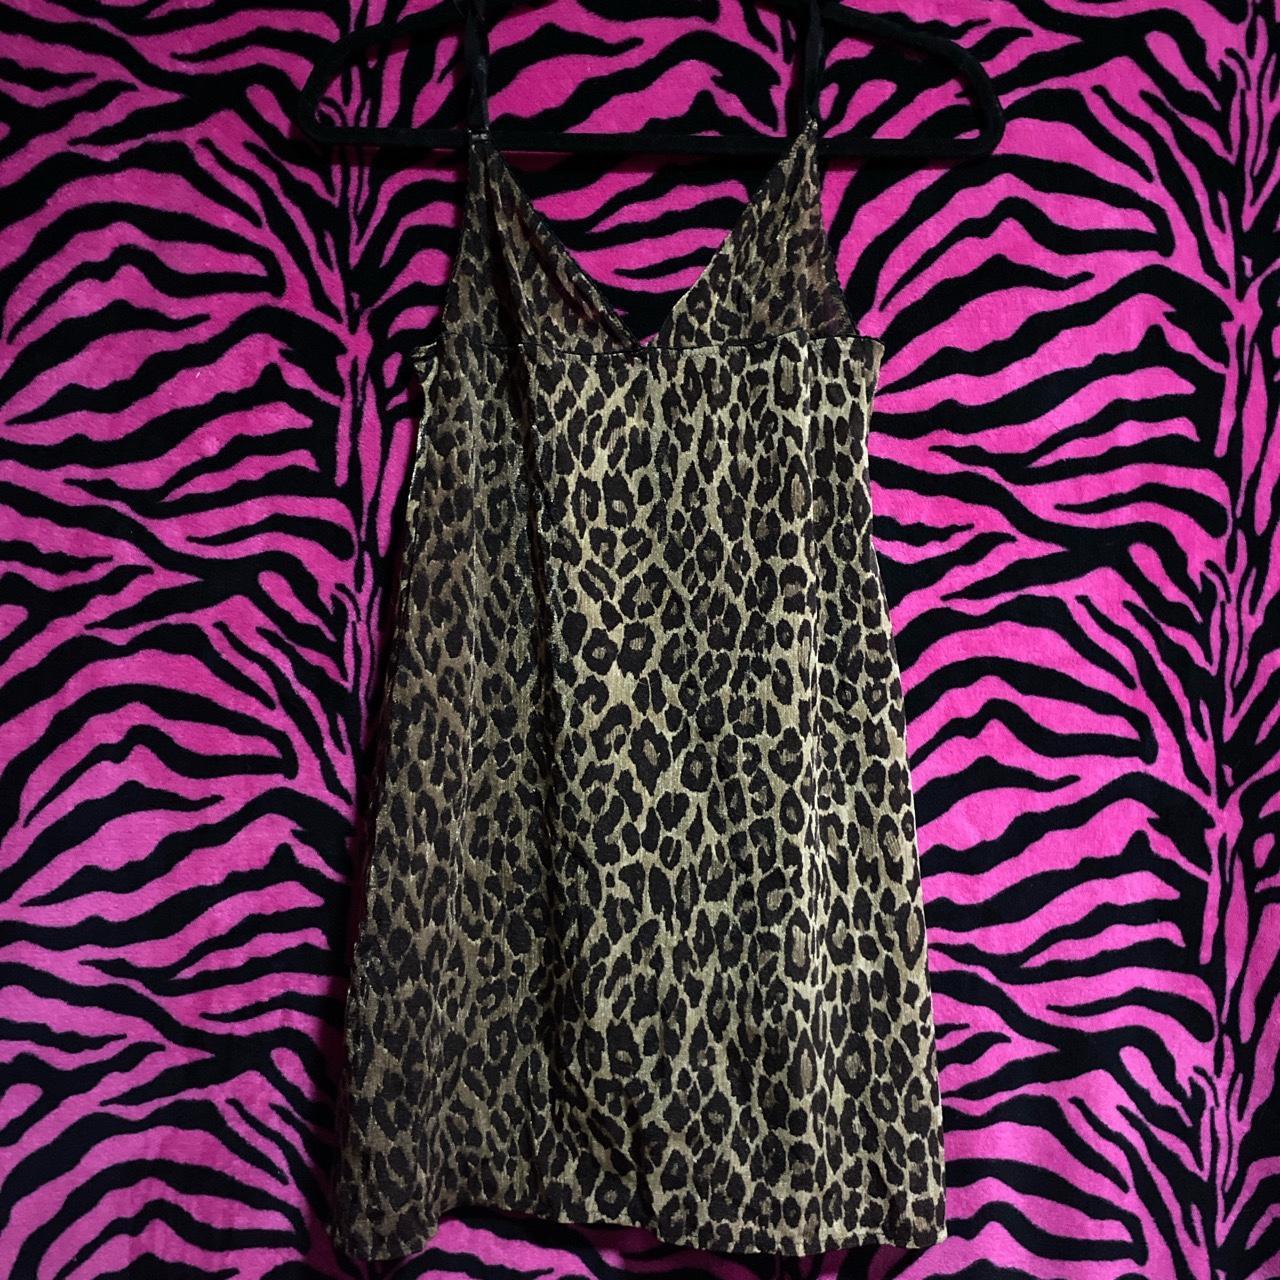 Leopard print mesh lingerie dress Good condition no... - Depop